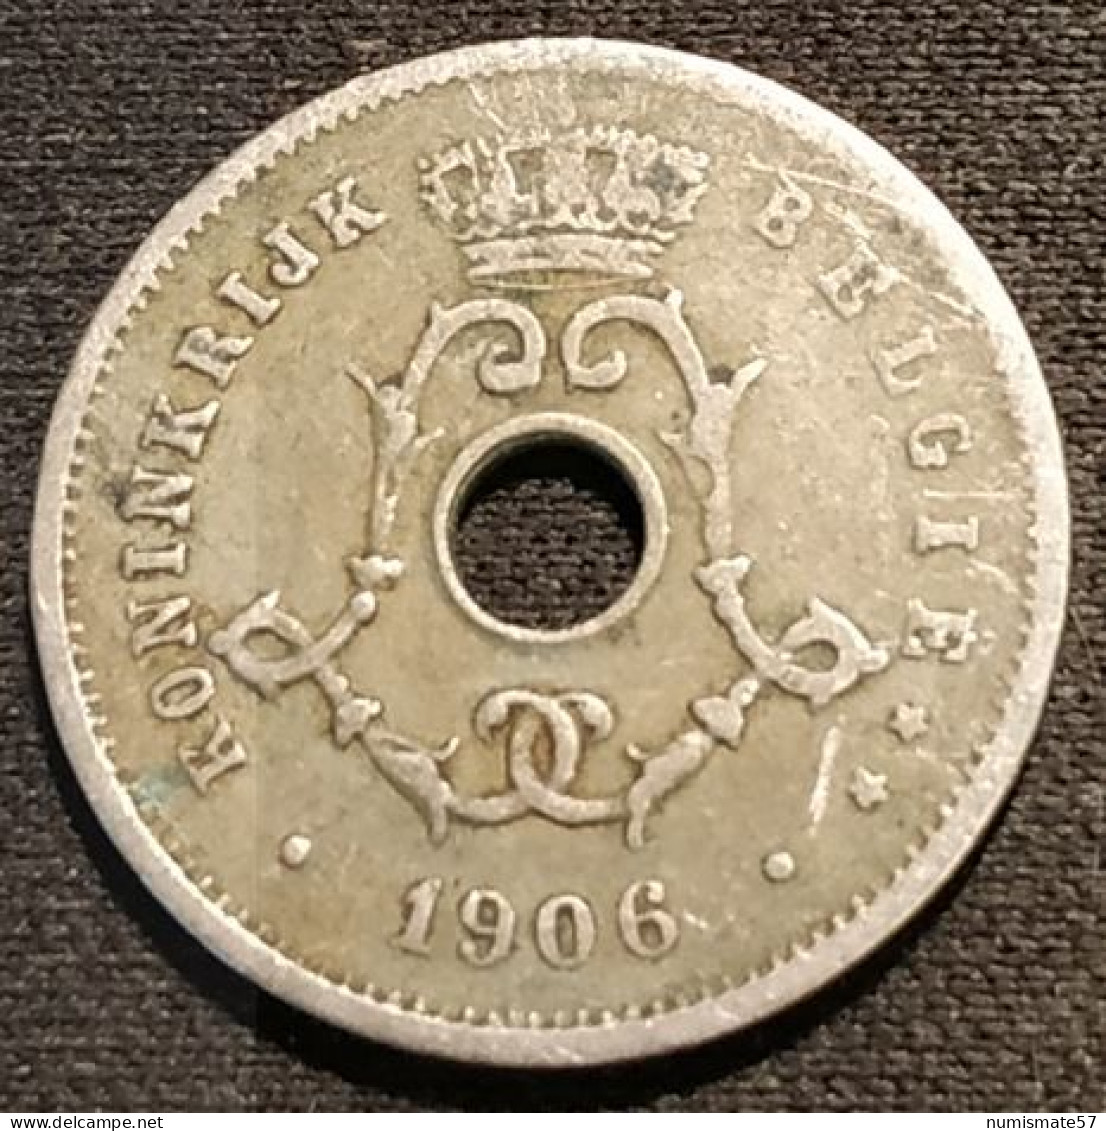 BELGIQUE - BELGIUM - 5 CENTIMES 1906 - Légende NL - Léopold II - Type Michaux - KM 55 - 5 Cents